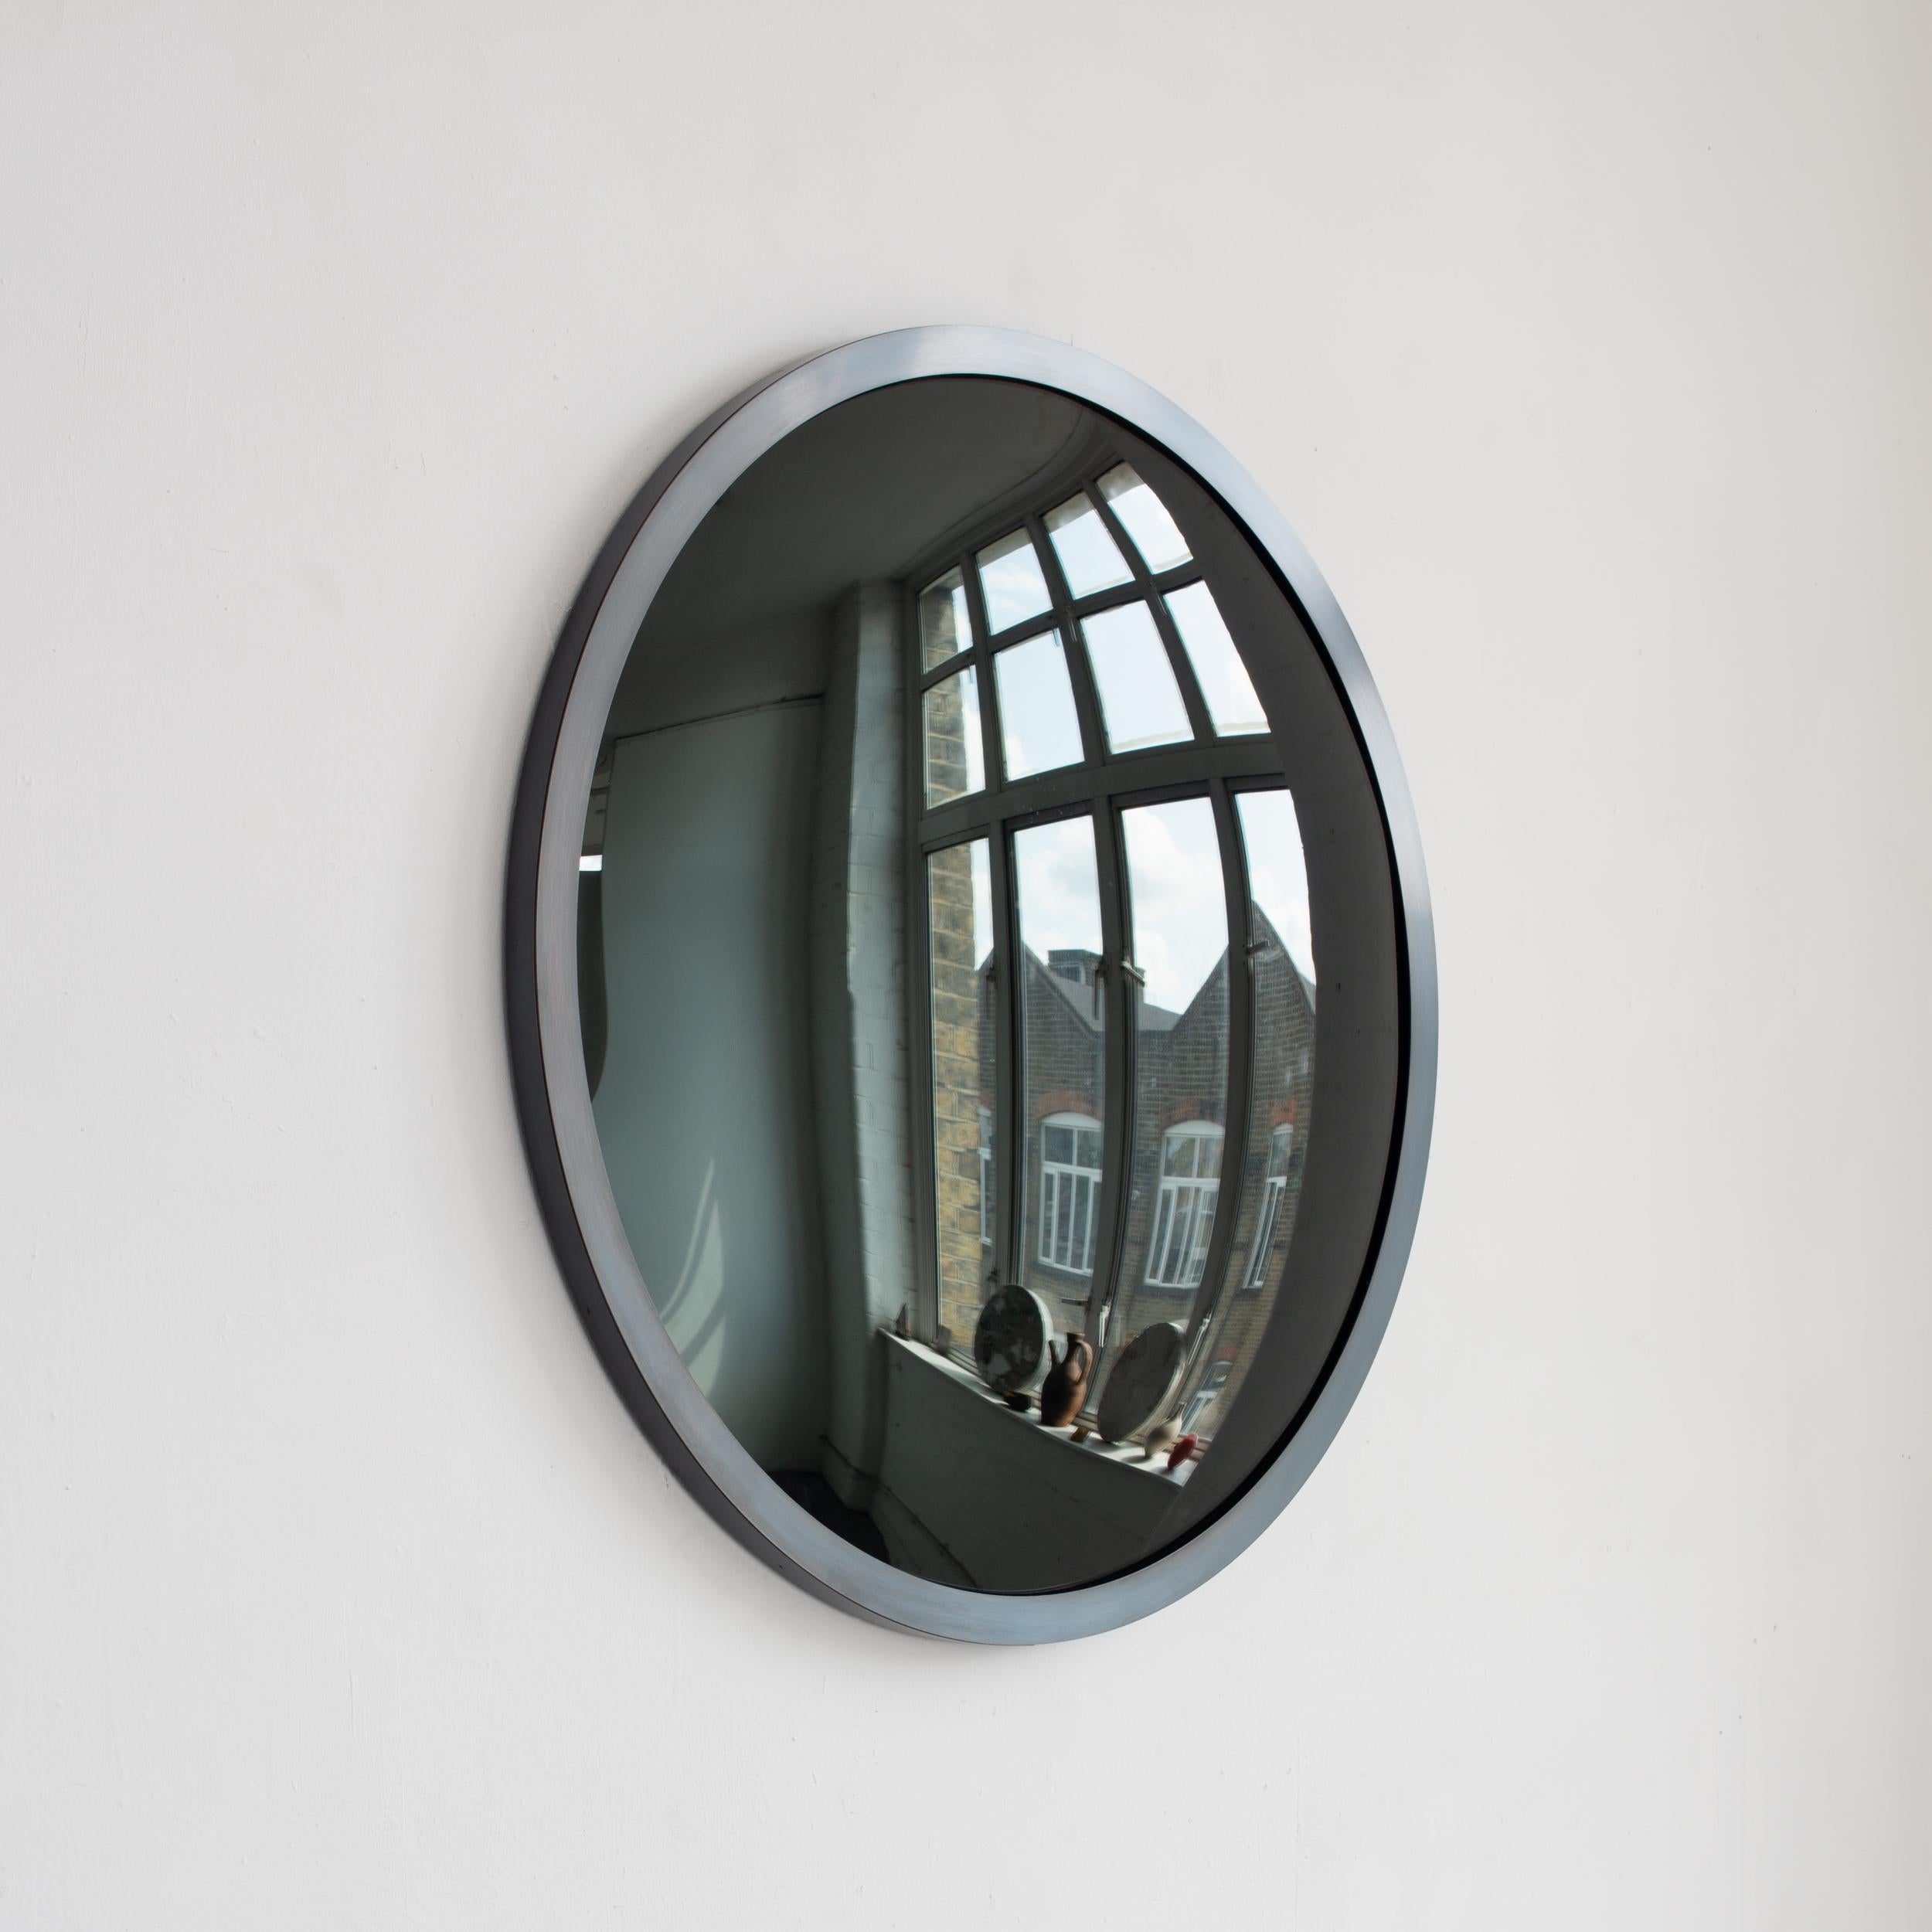 Superbe miroir convexe teinté noir avec un cadre en métal noirci.

Chaque miroir convexe Orbis™ est conçu et fabriqué à la main à Londres, au Royaume-Uni. De légères variations de taille et des imperfections sur les bords et les finitions de surface